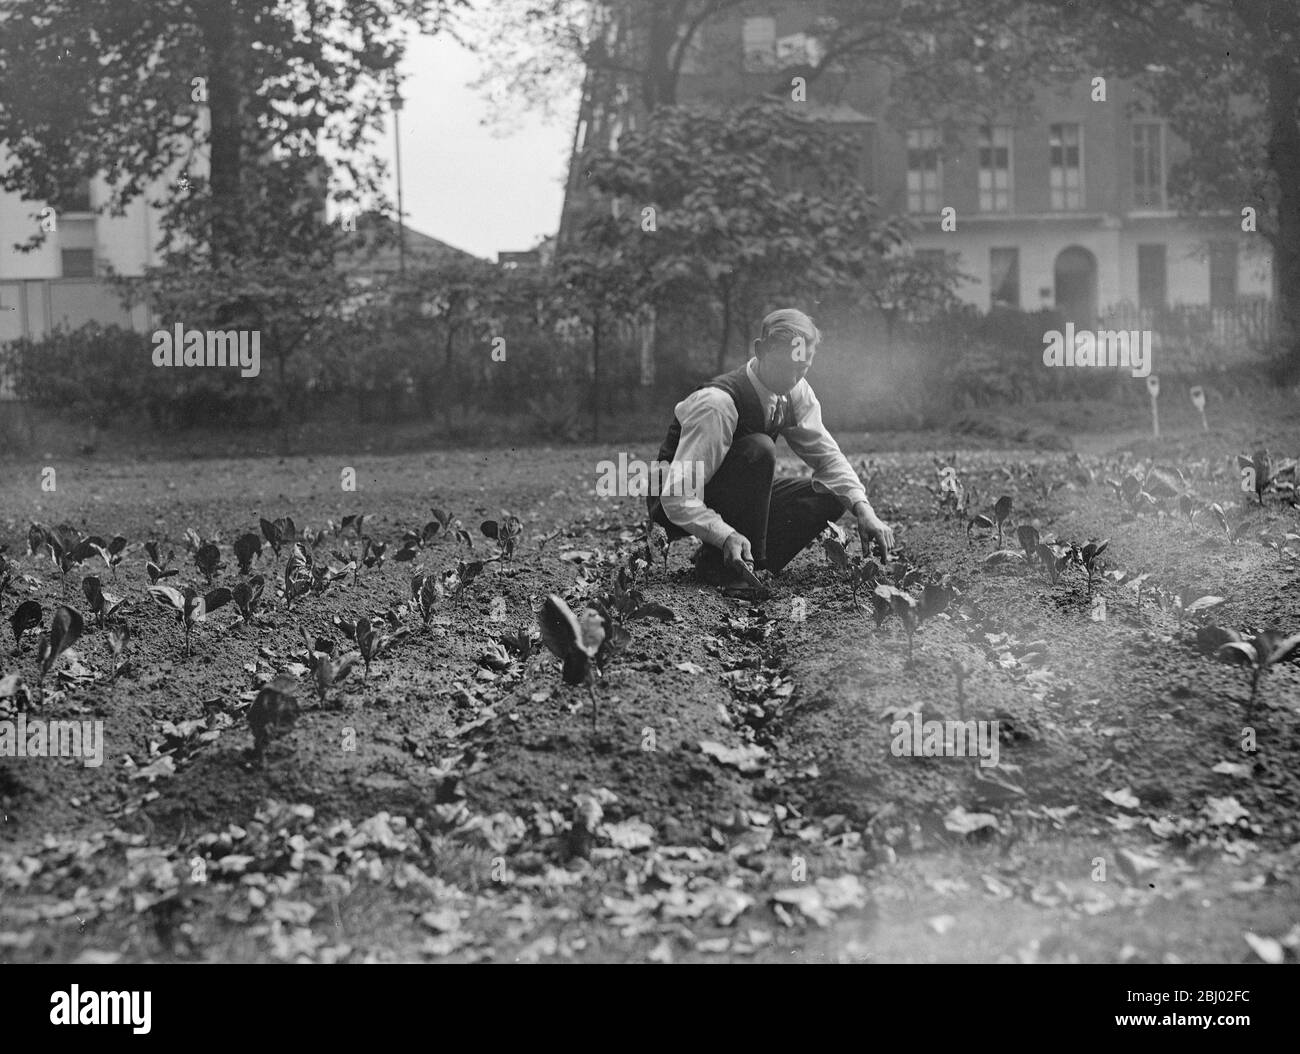 Le verdure sono state coltivate nelle piazze londinesi ( Tavistock Square ) - Ottobre 1939 Foto Stock